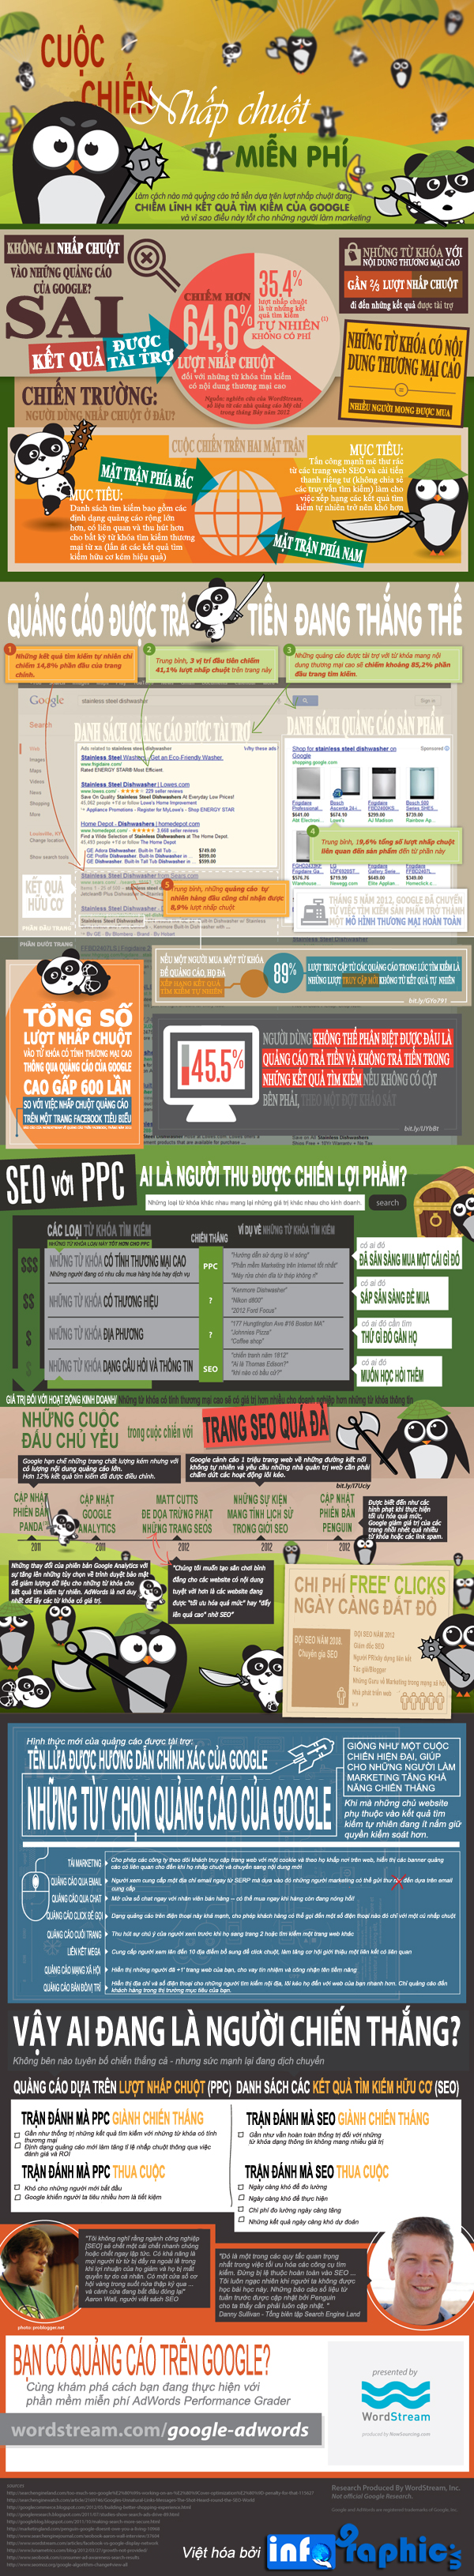 infographicdang-sau-nhung-ket-qua-tim-kiem-tu-google